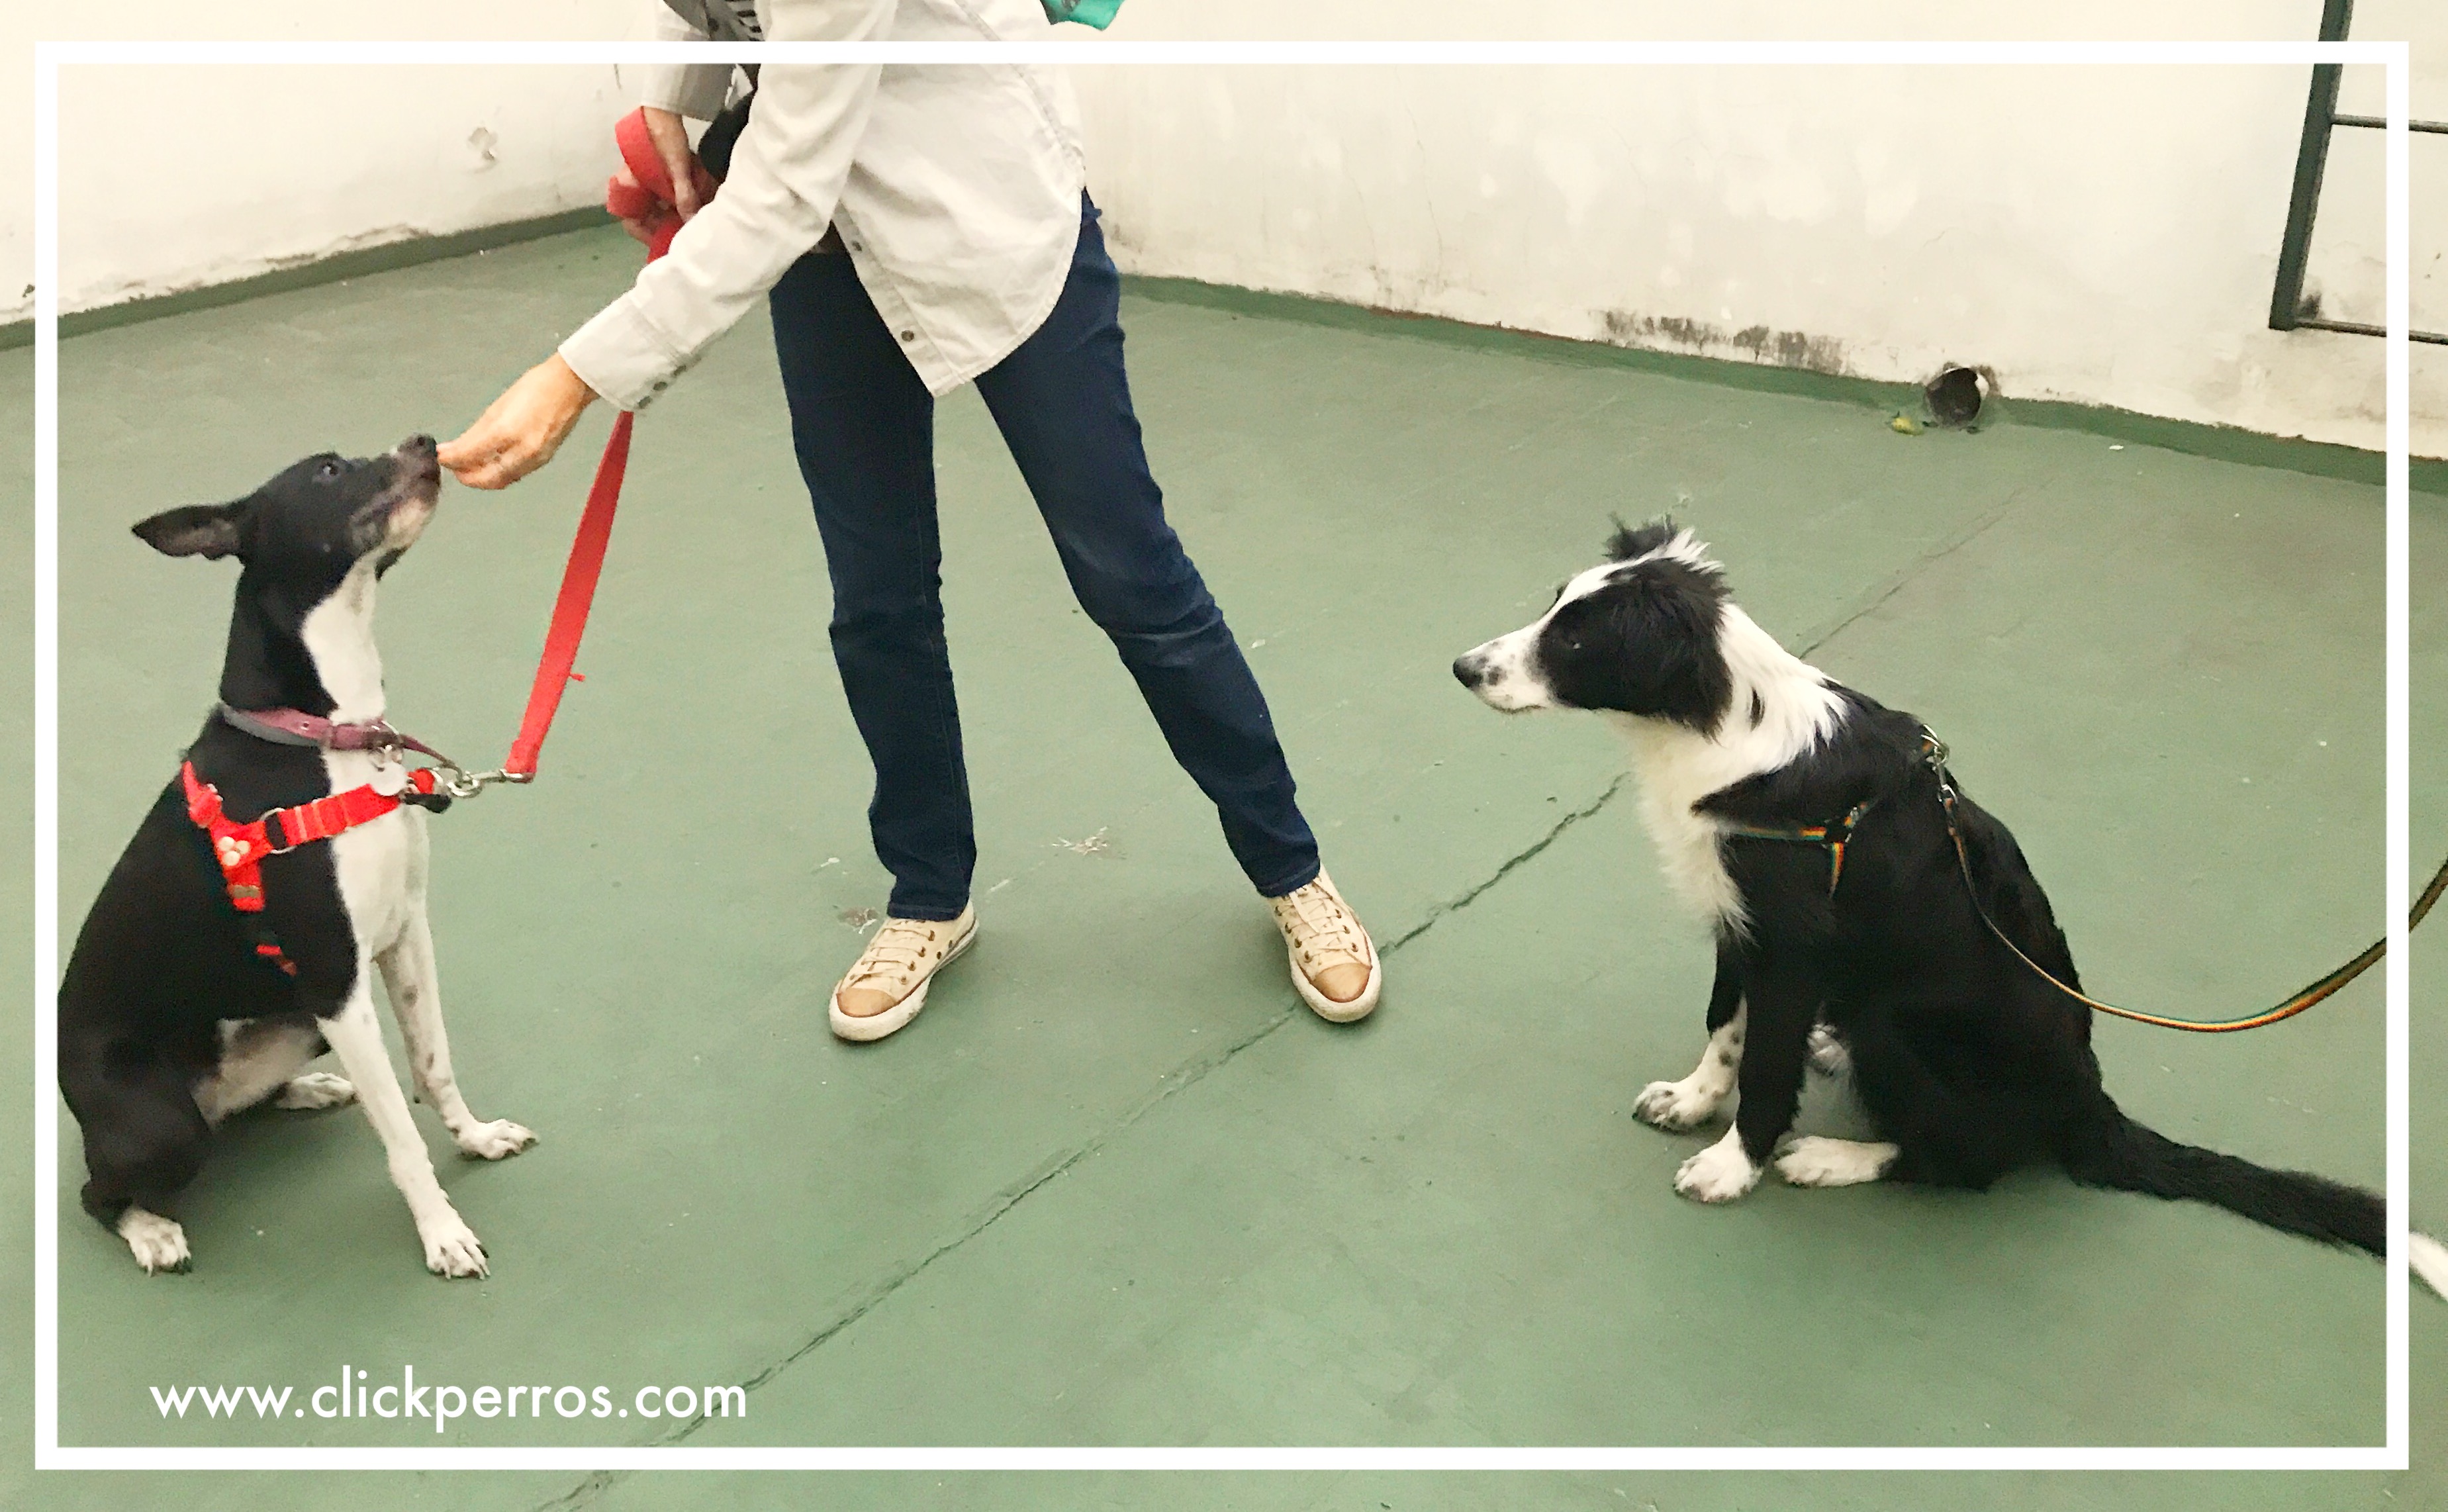 adiestramiento canino con metodos positivos mendoza argentina